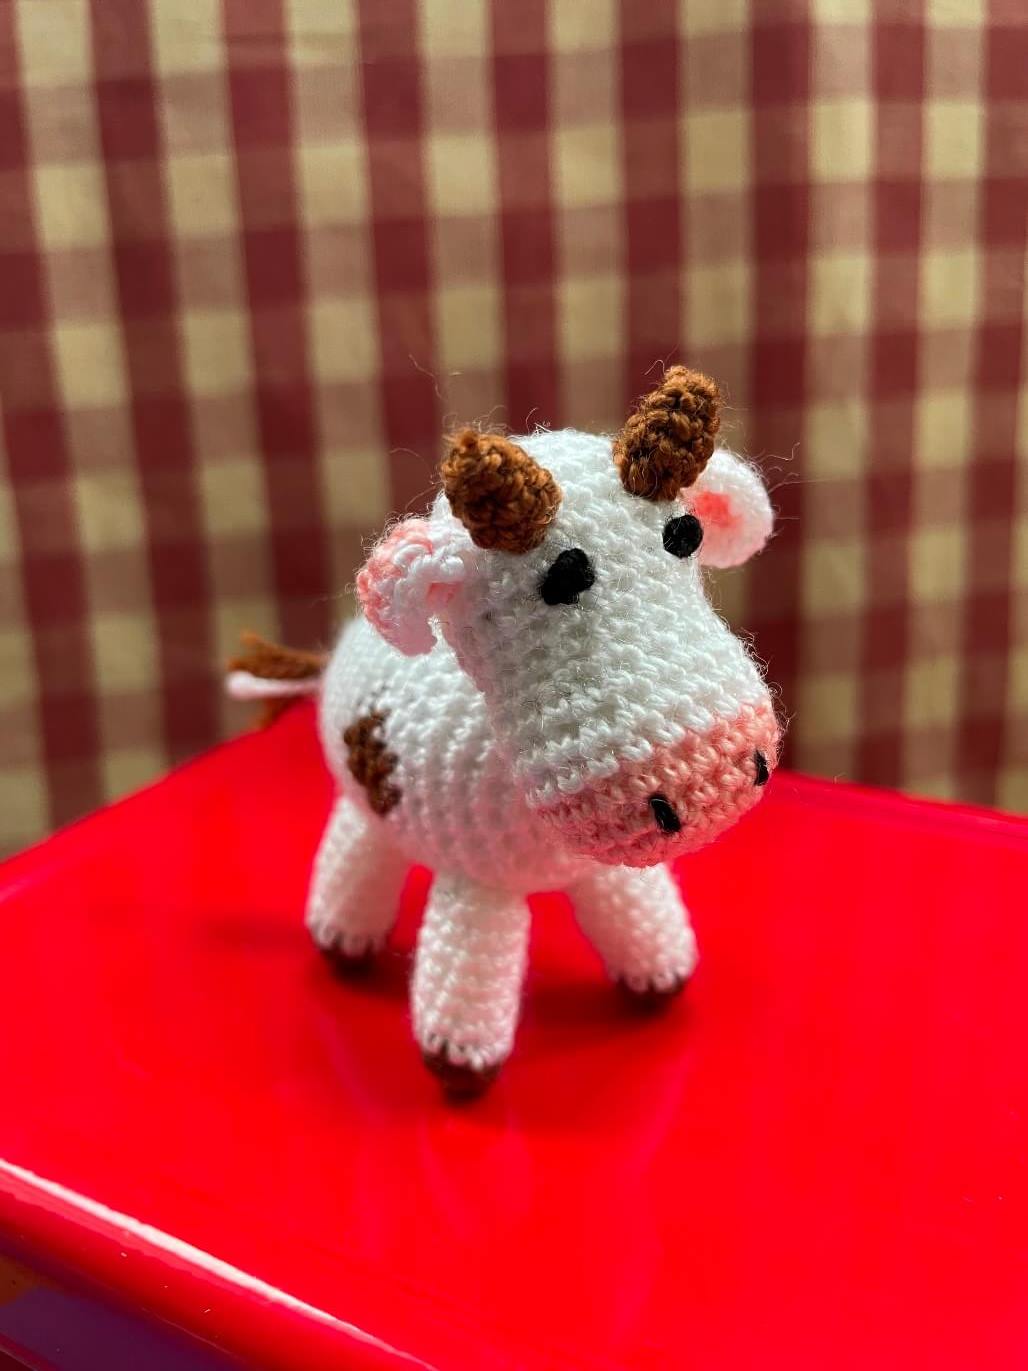 MINIGURUMI Mini Crochet Farm Animals